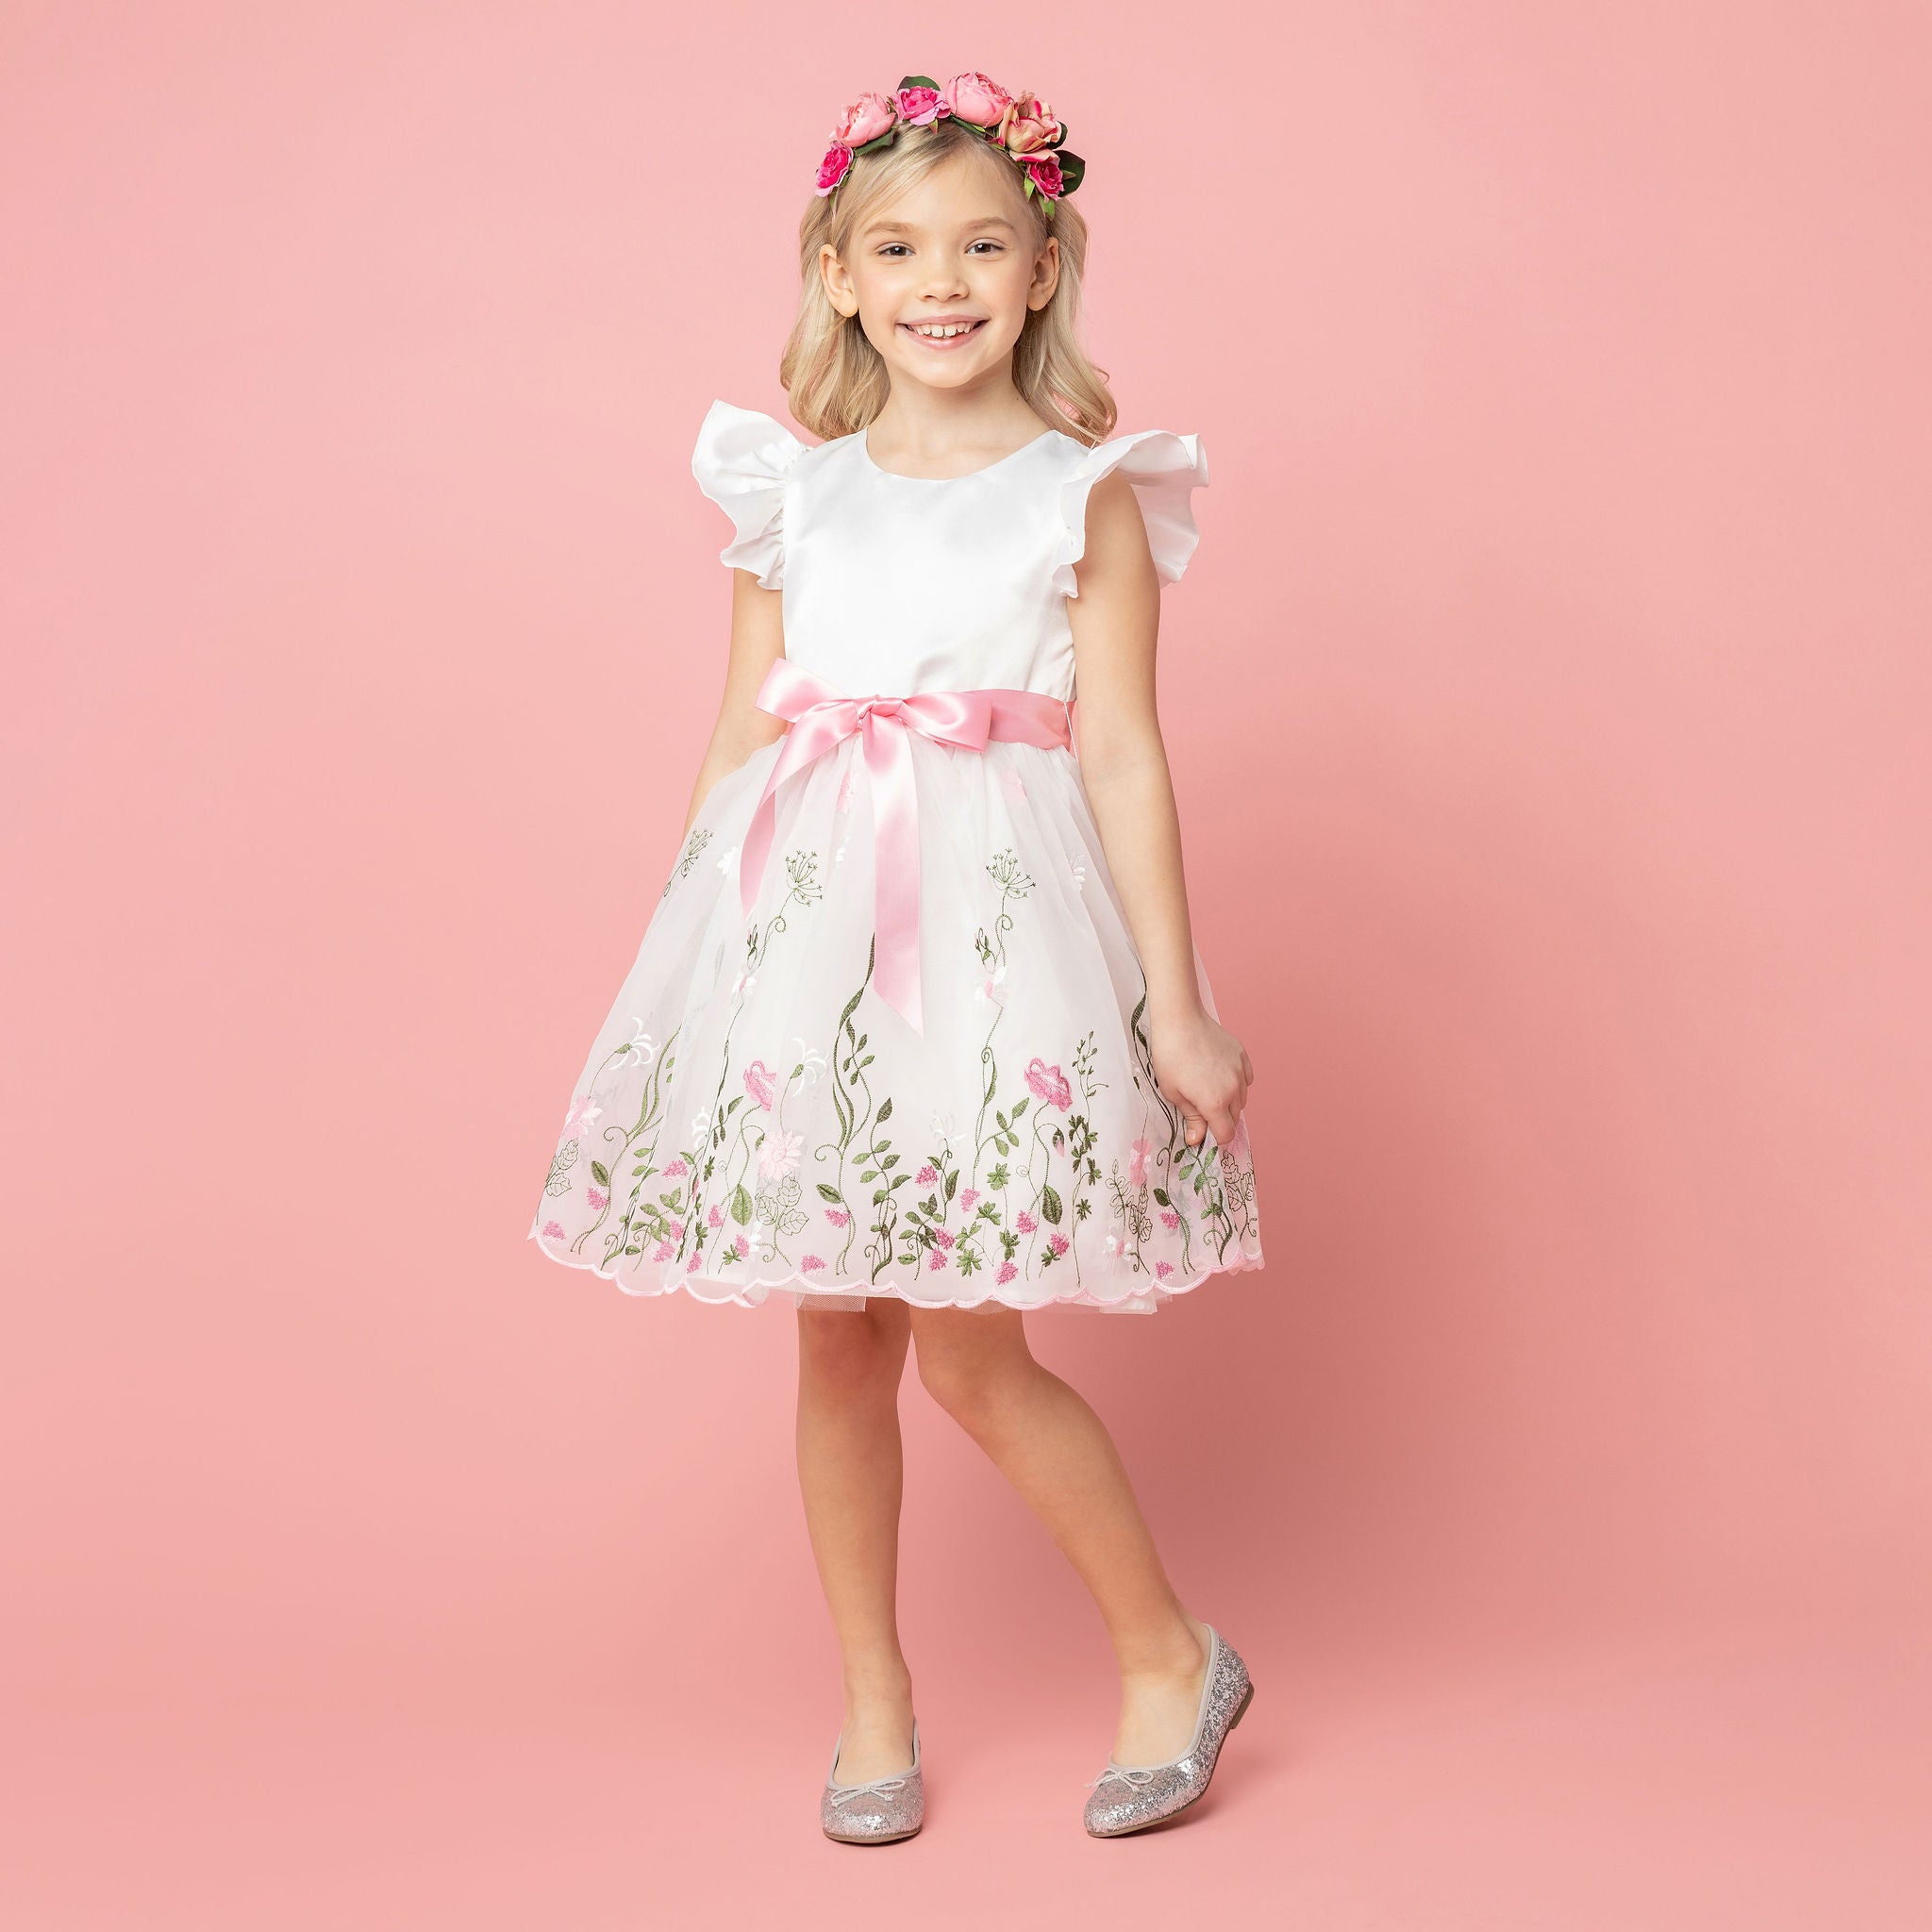 Adrienne Birthday Princess Dress - Miele Moda Luxury Fashion